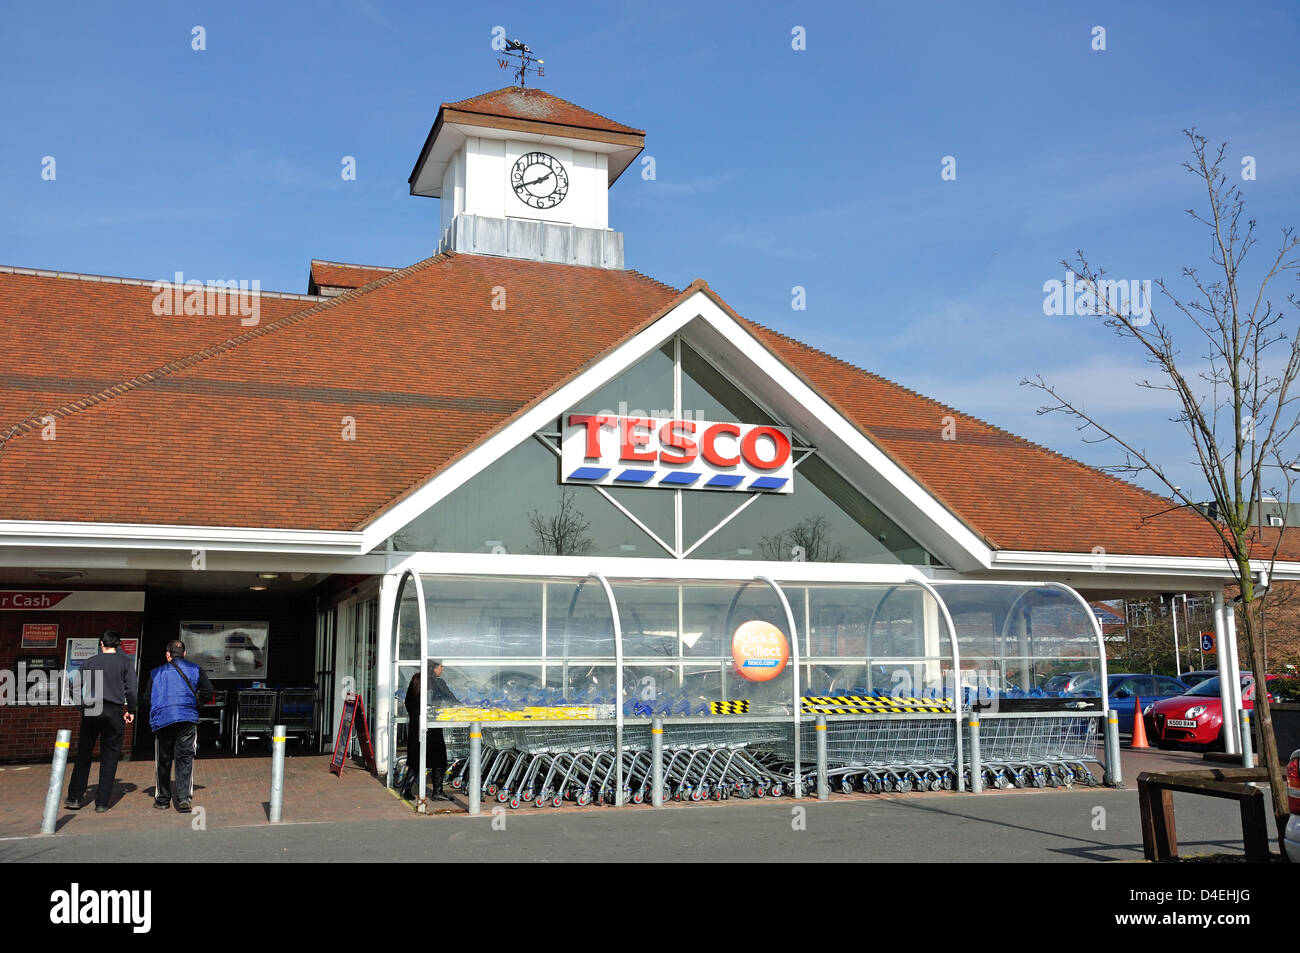 Tesco supermarket, High Street, Feltham, London Borough of Hounslow, Greater London, England, United Kingdom Stock Photo